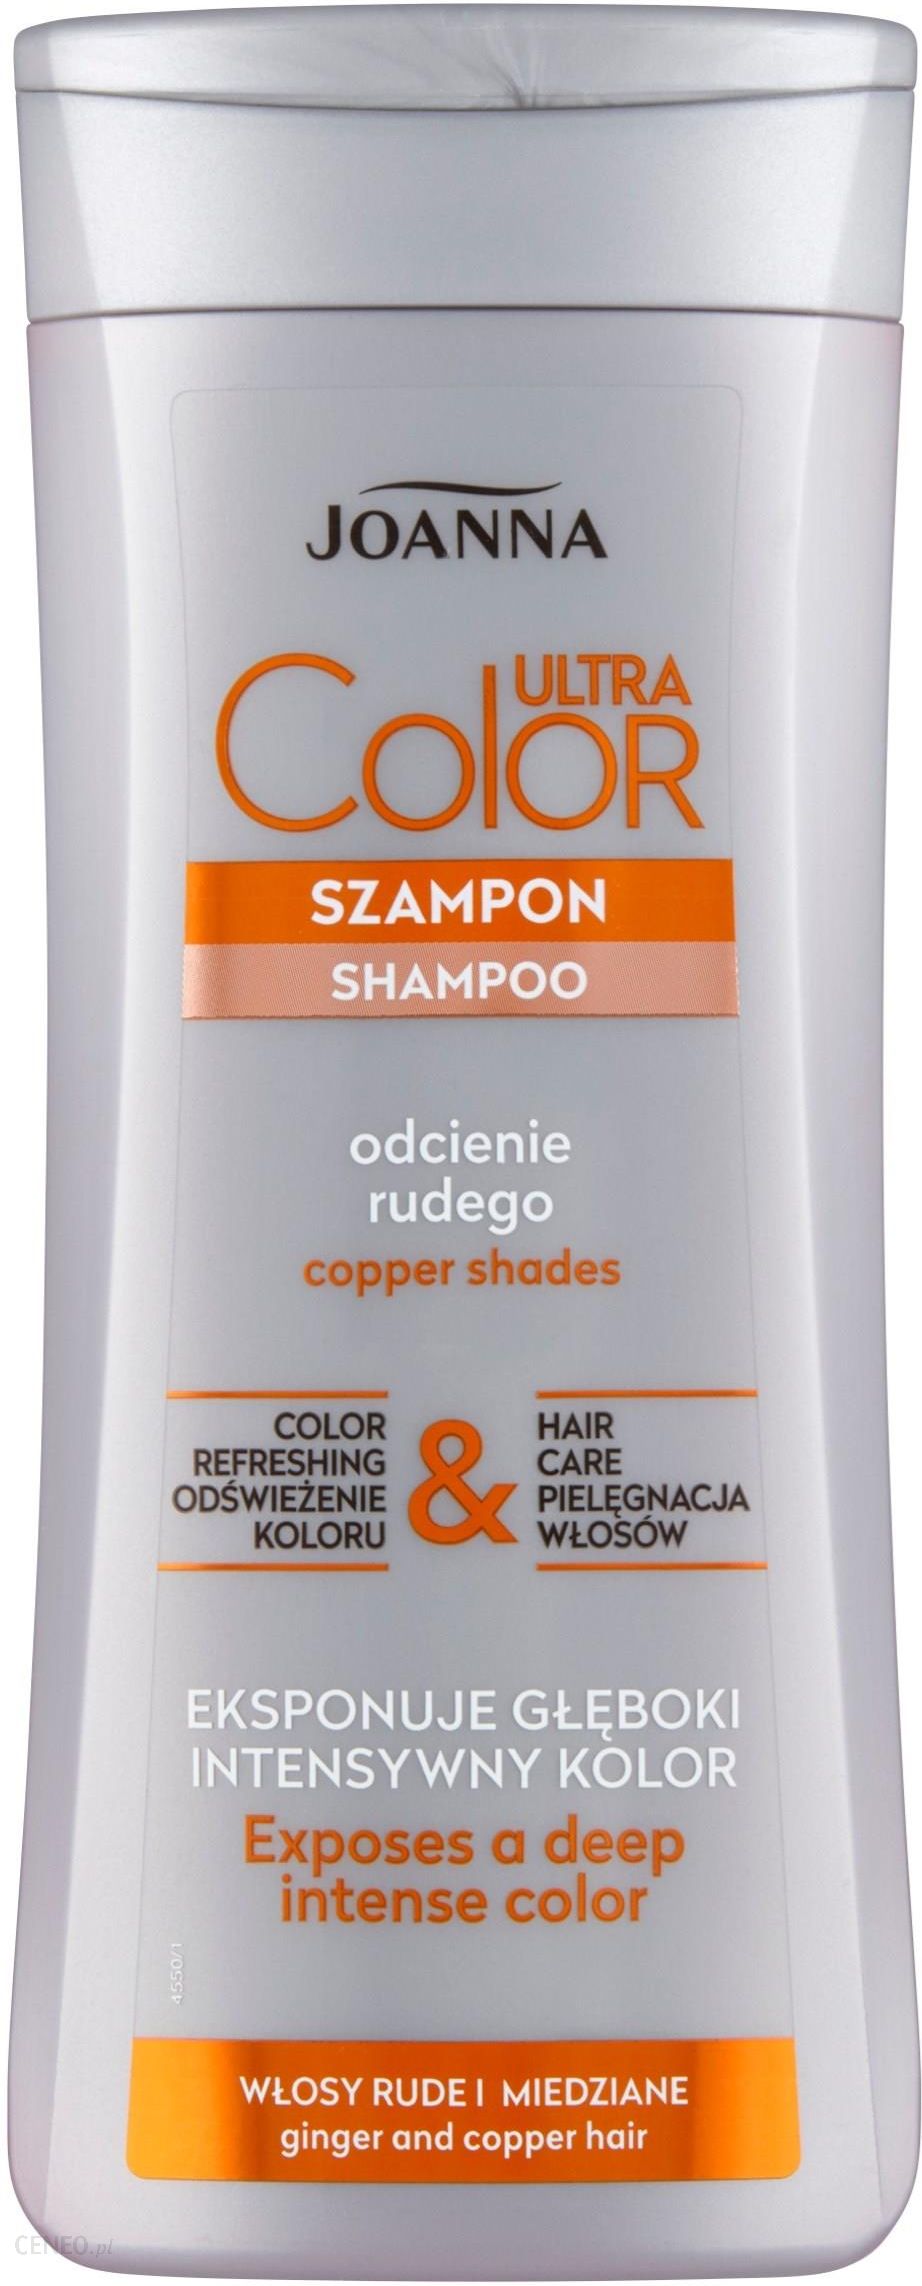 szampon ultra color rude adres lodzi gdzie